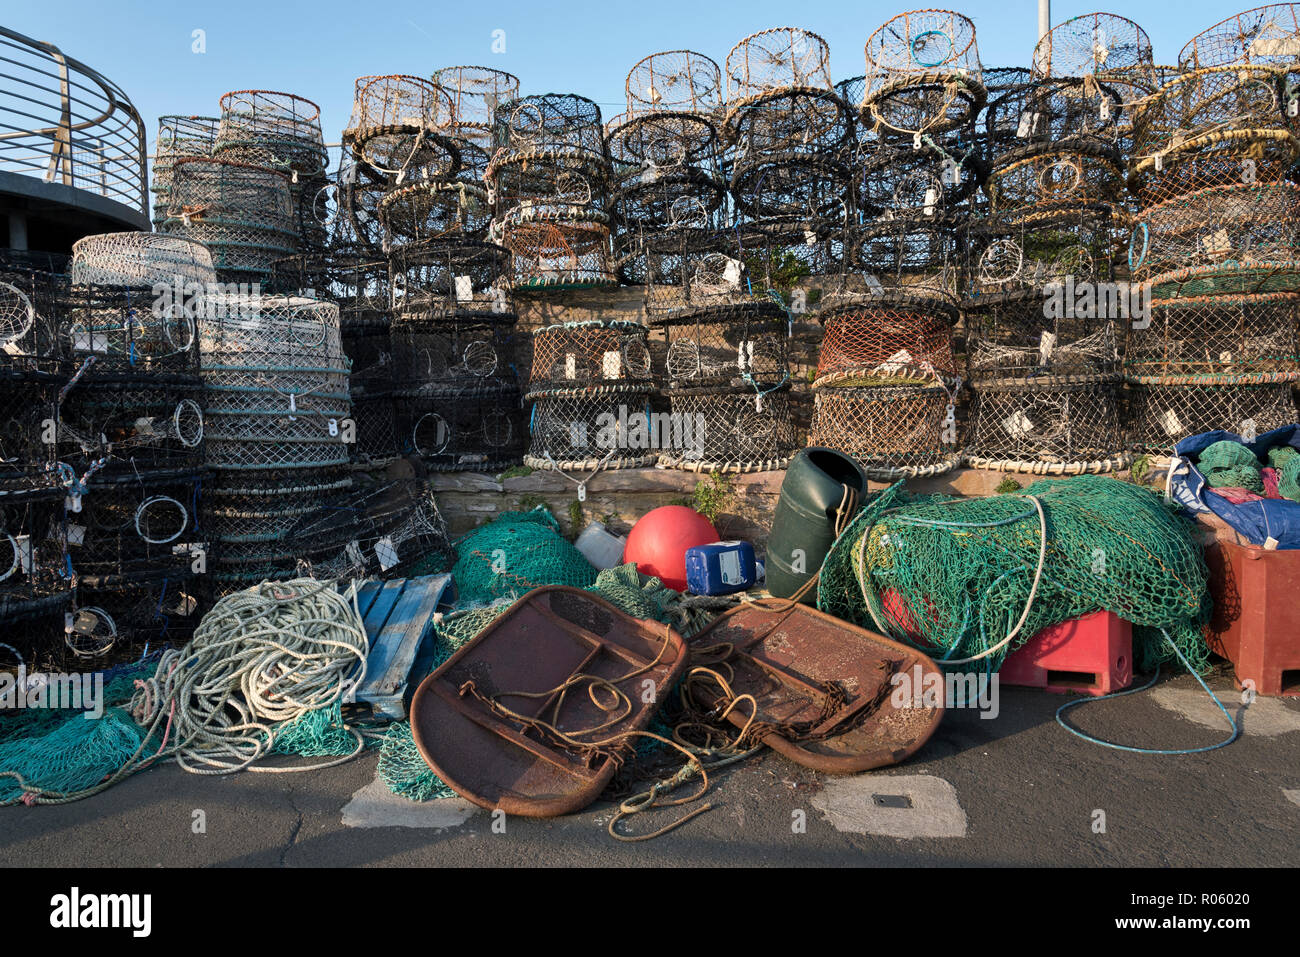 Redes de pesca de langosta, ollas y otros aparejos de pesca en el muelle en el puerto de Brixham, Devon, Reino Unido Foto de stock